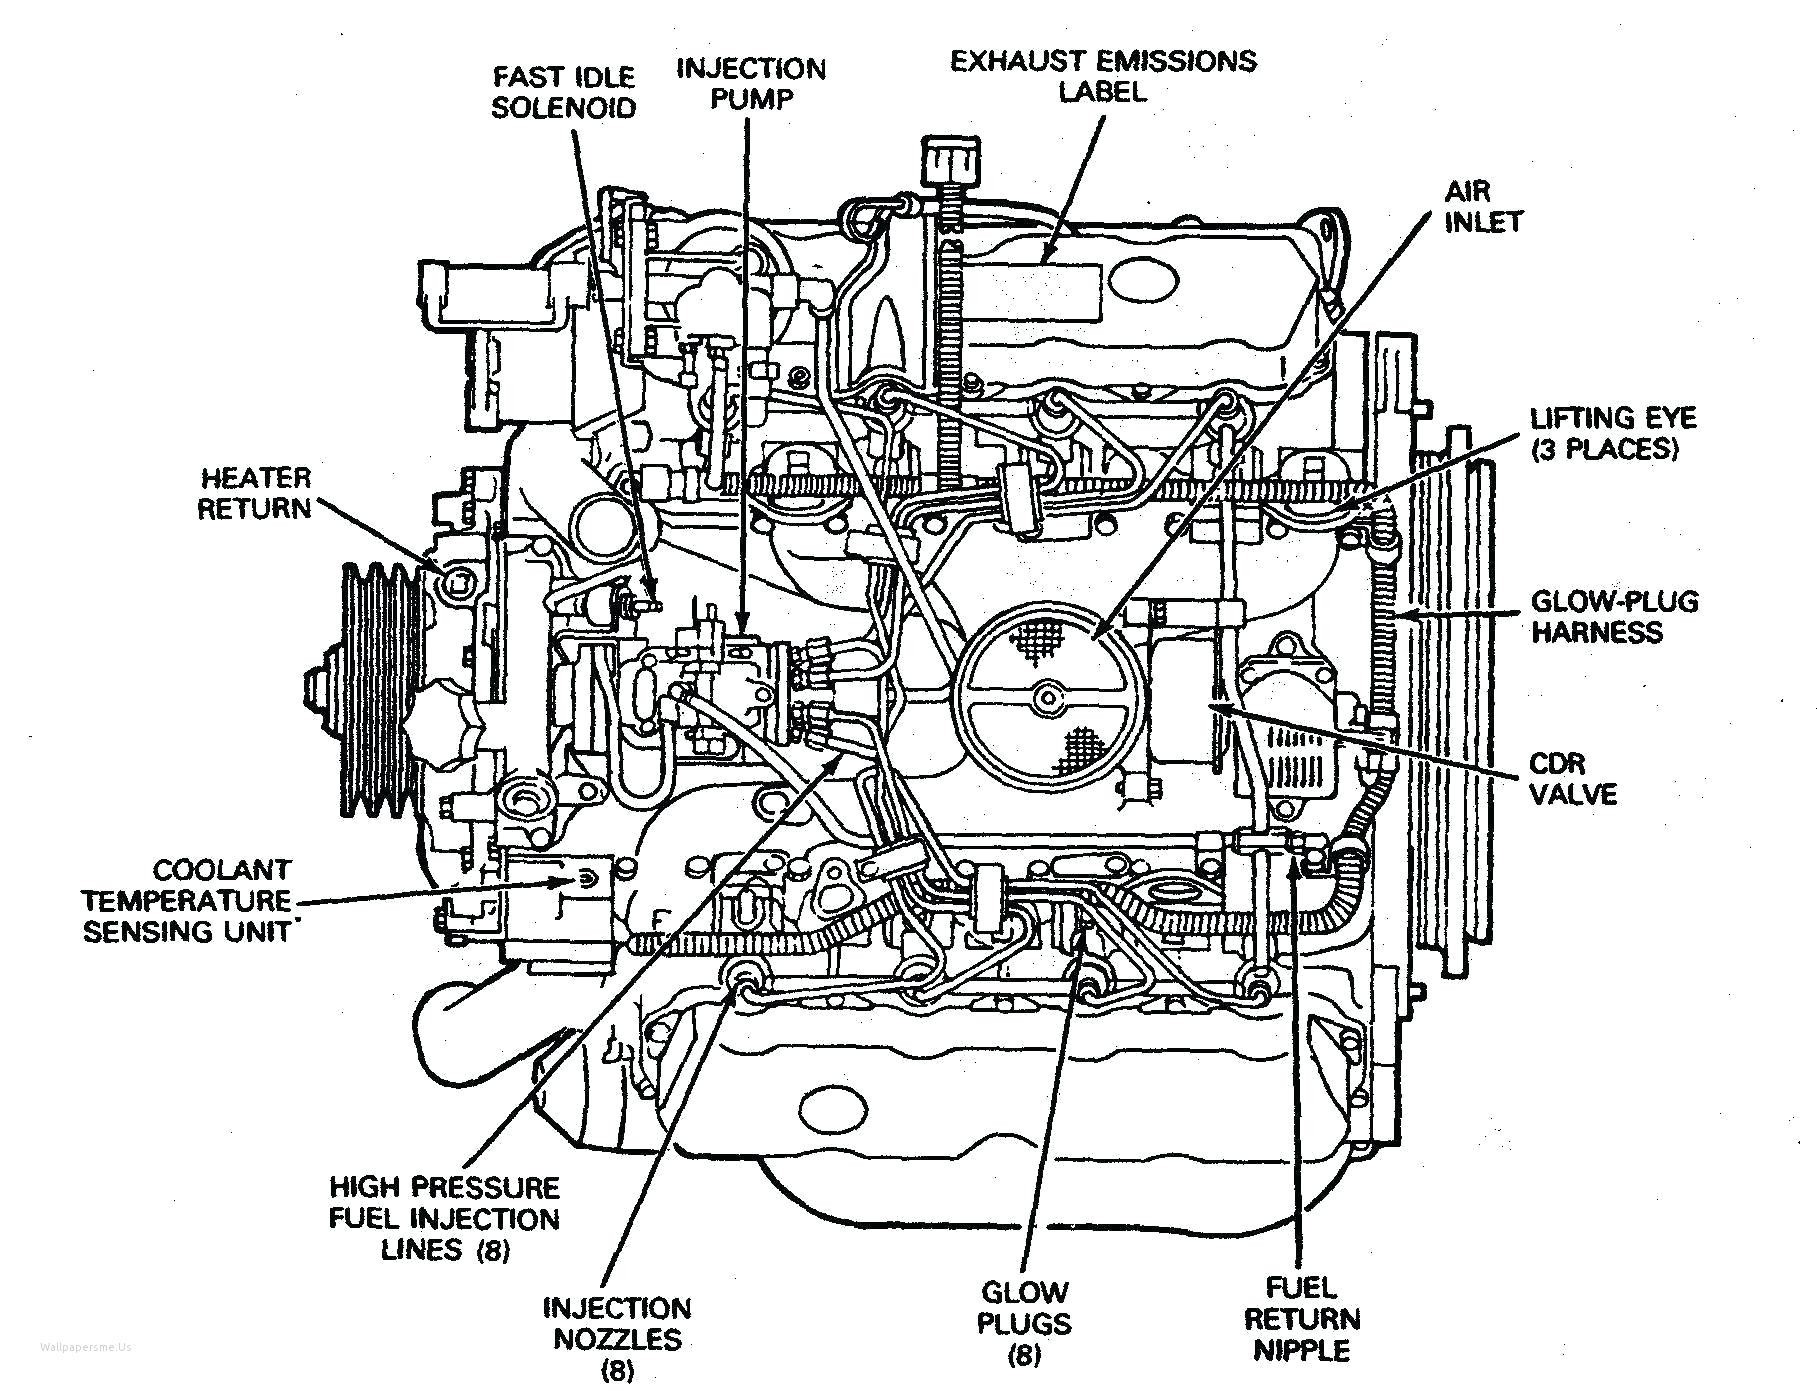 Diagram Of Car Muffler Basic Car Engine Diagram Awesome Engine Diagrams Line Contemporary Of Diagram Of Car Muffler